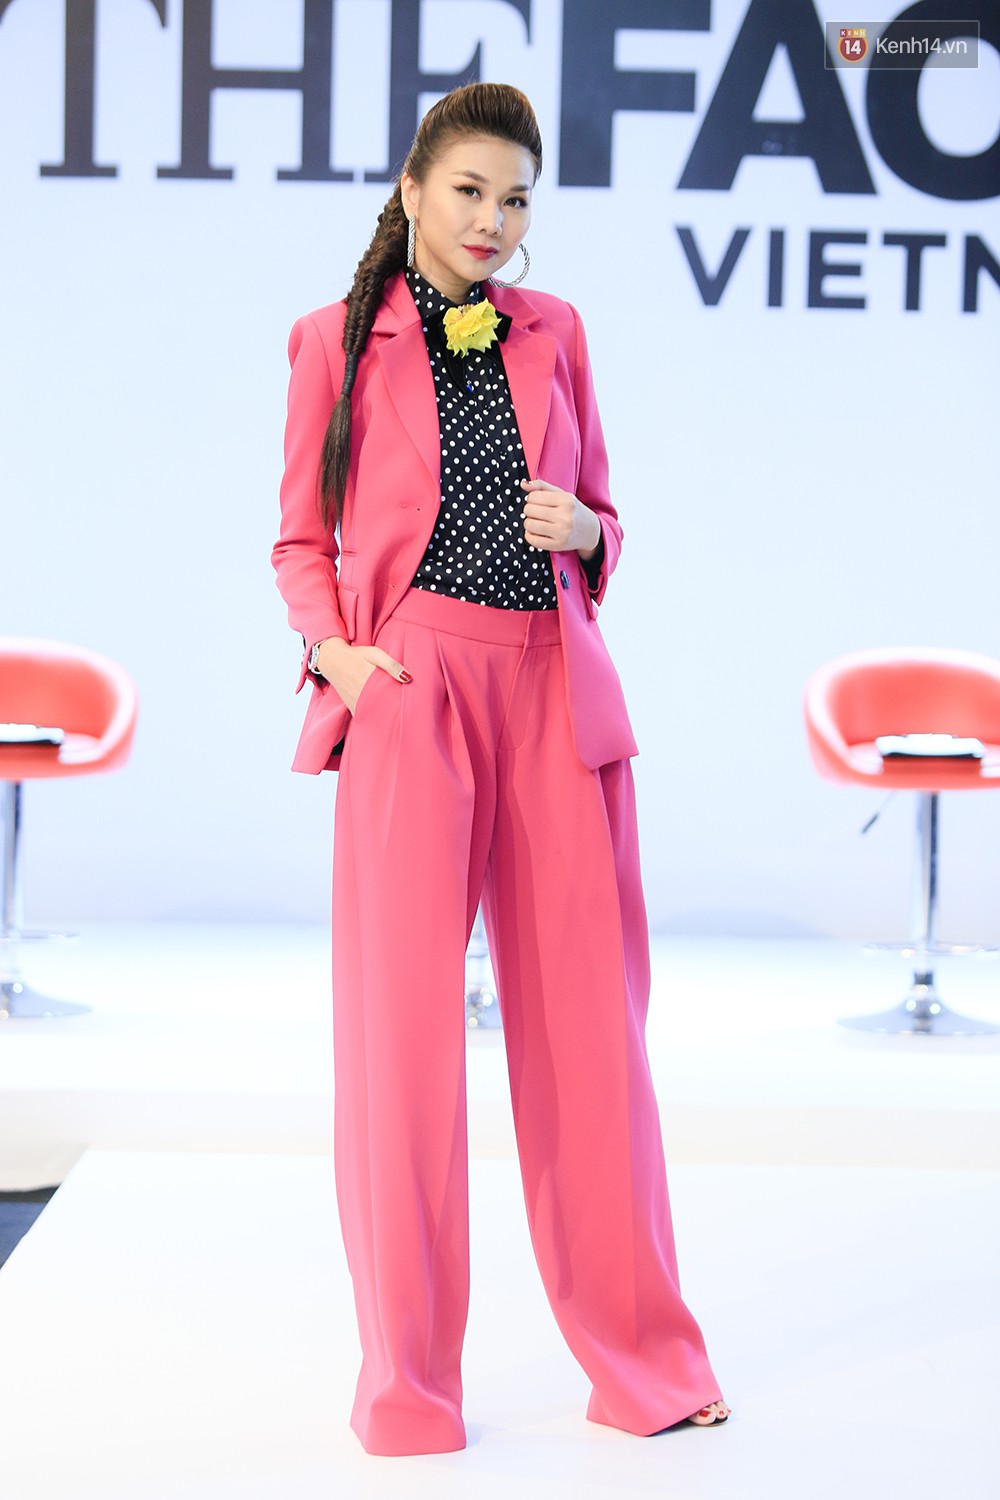 Thanh Hằng đeo đồng hồ 2 tỷ, Võ Hoàng Yến “ton sur ton” Nam Trung tại casting The Face ở Hà Nội - Ảnh 2.